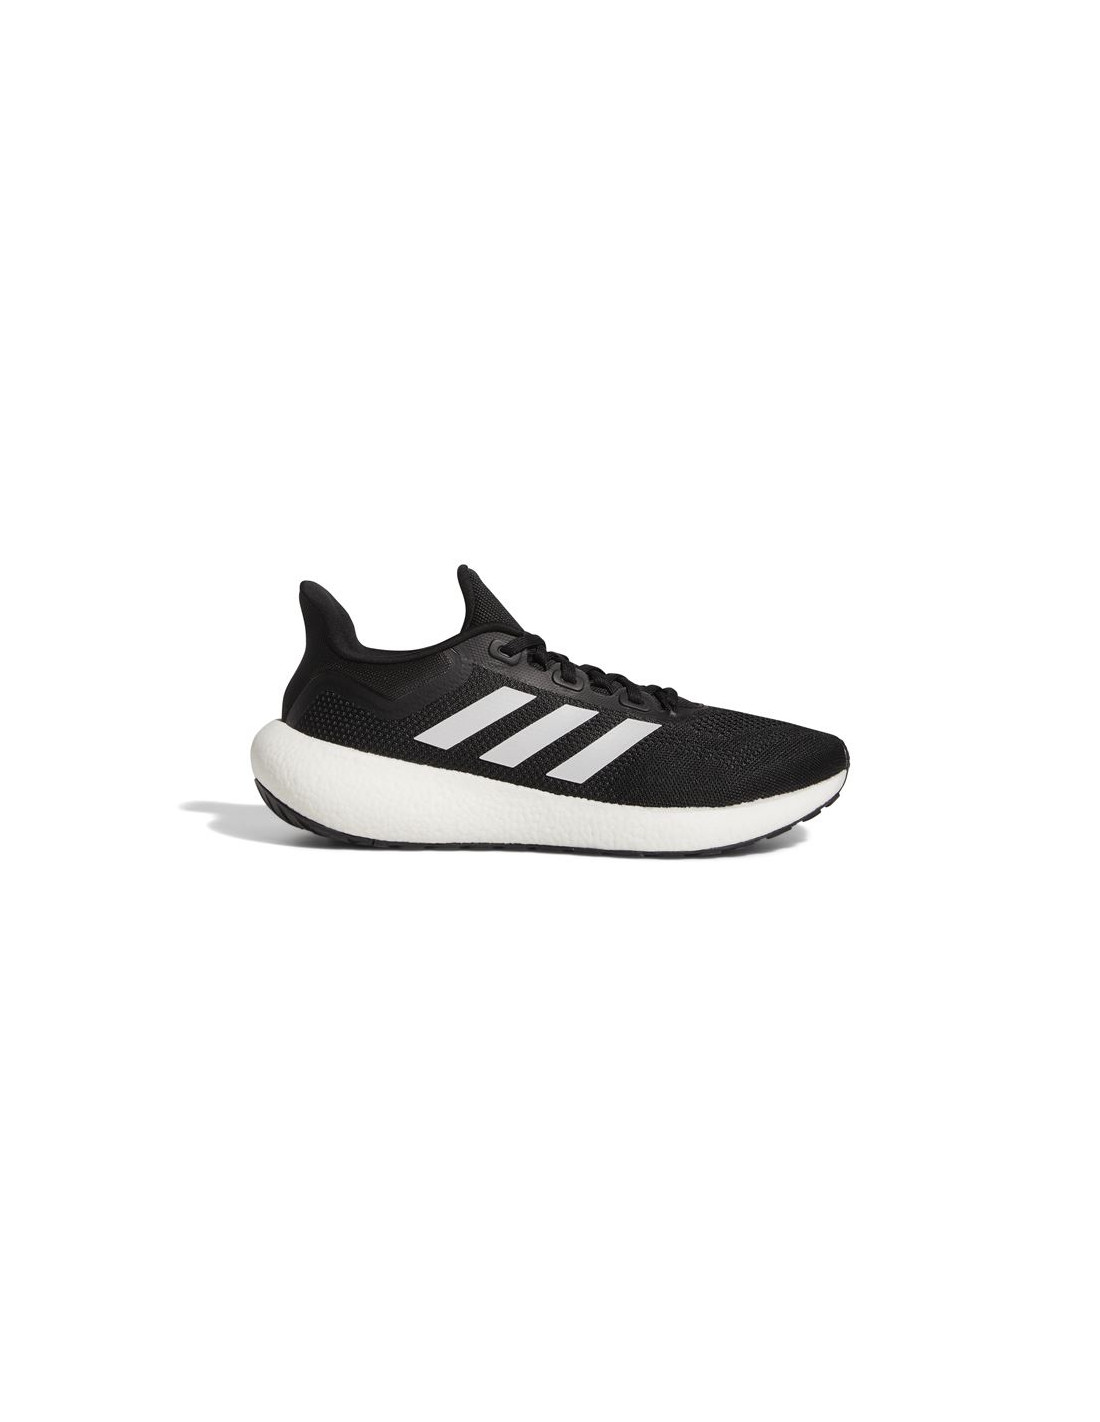 Adidas – Zapatillas para Hombre Negras – Pureboost 22 42.5 Negro